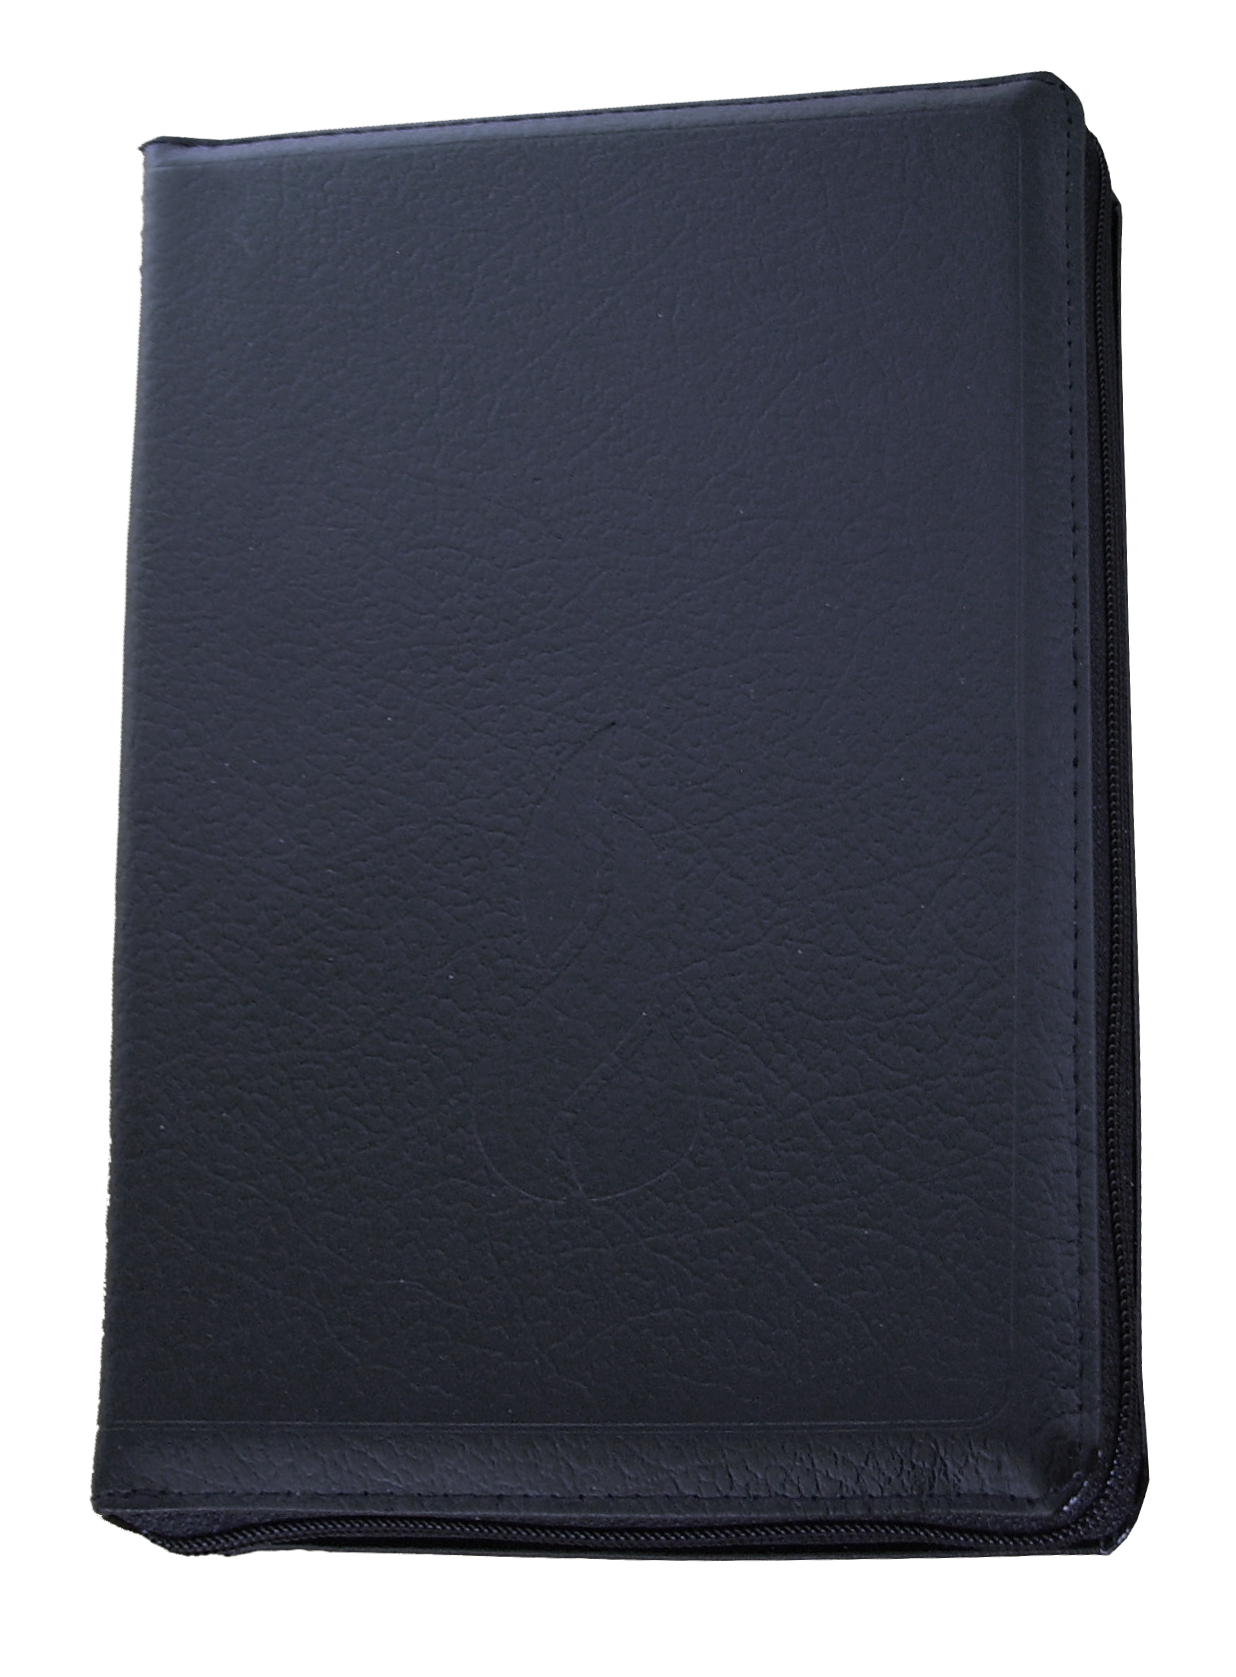 Bible Segond NEG, compacte, noire - couverture souple,fibrocuir, avec zipper et tranche or 